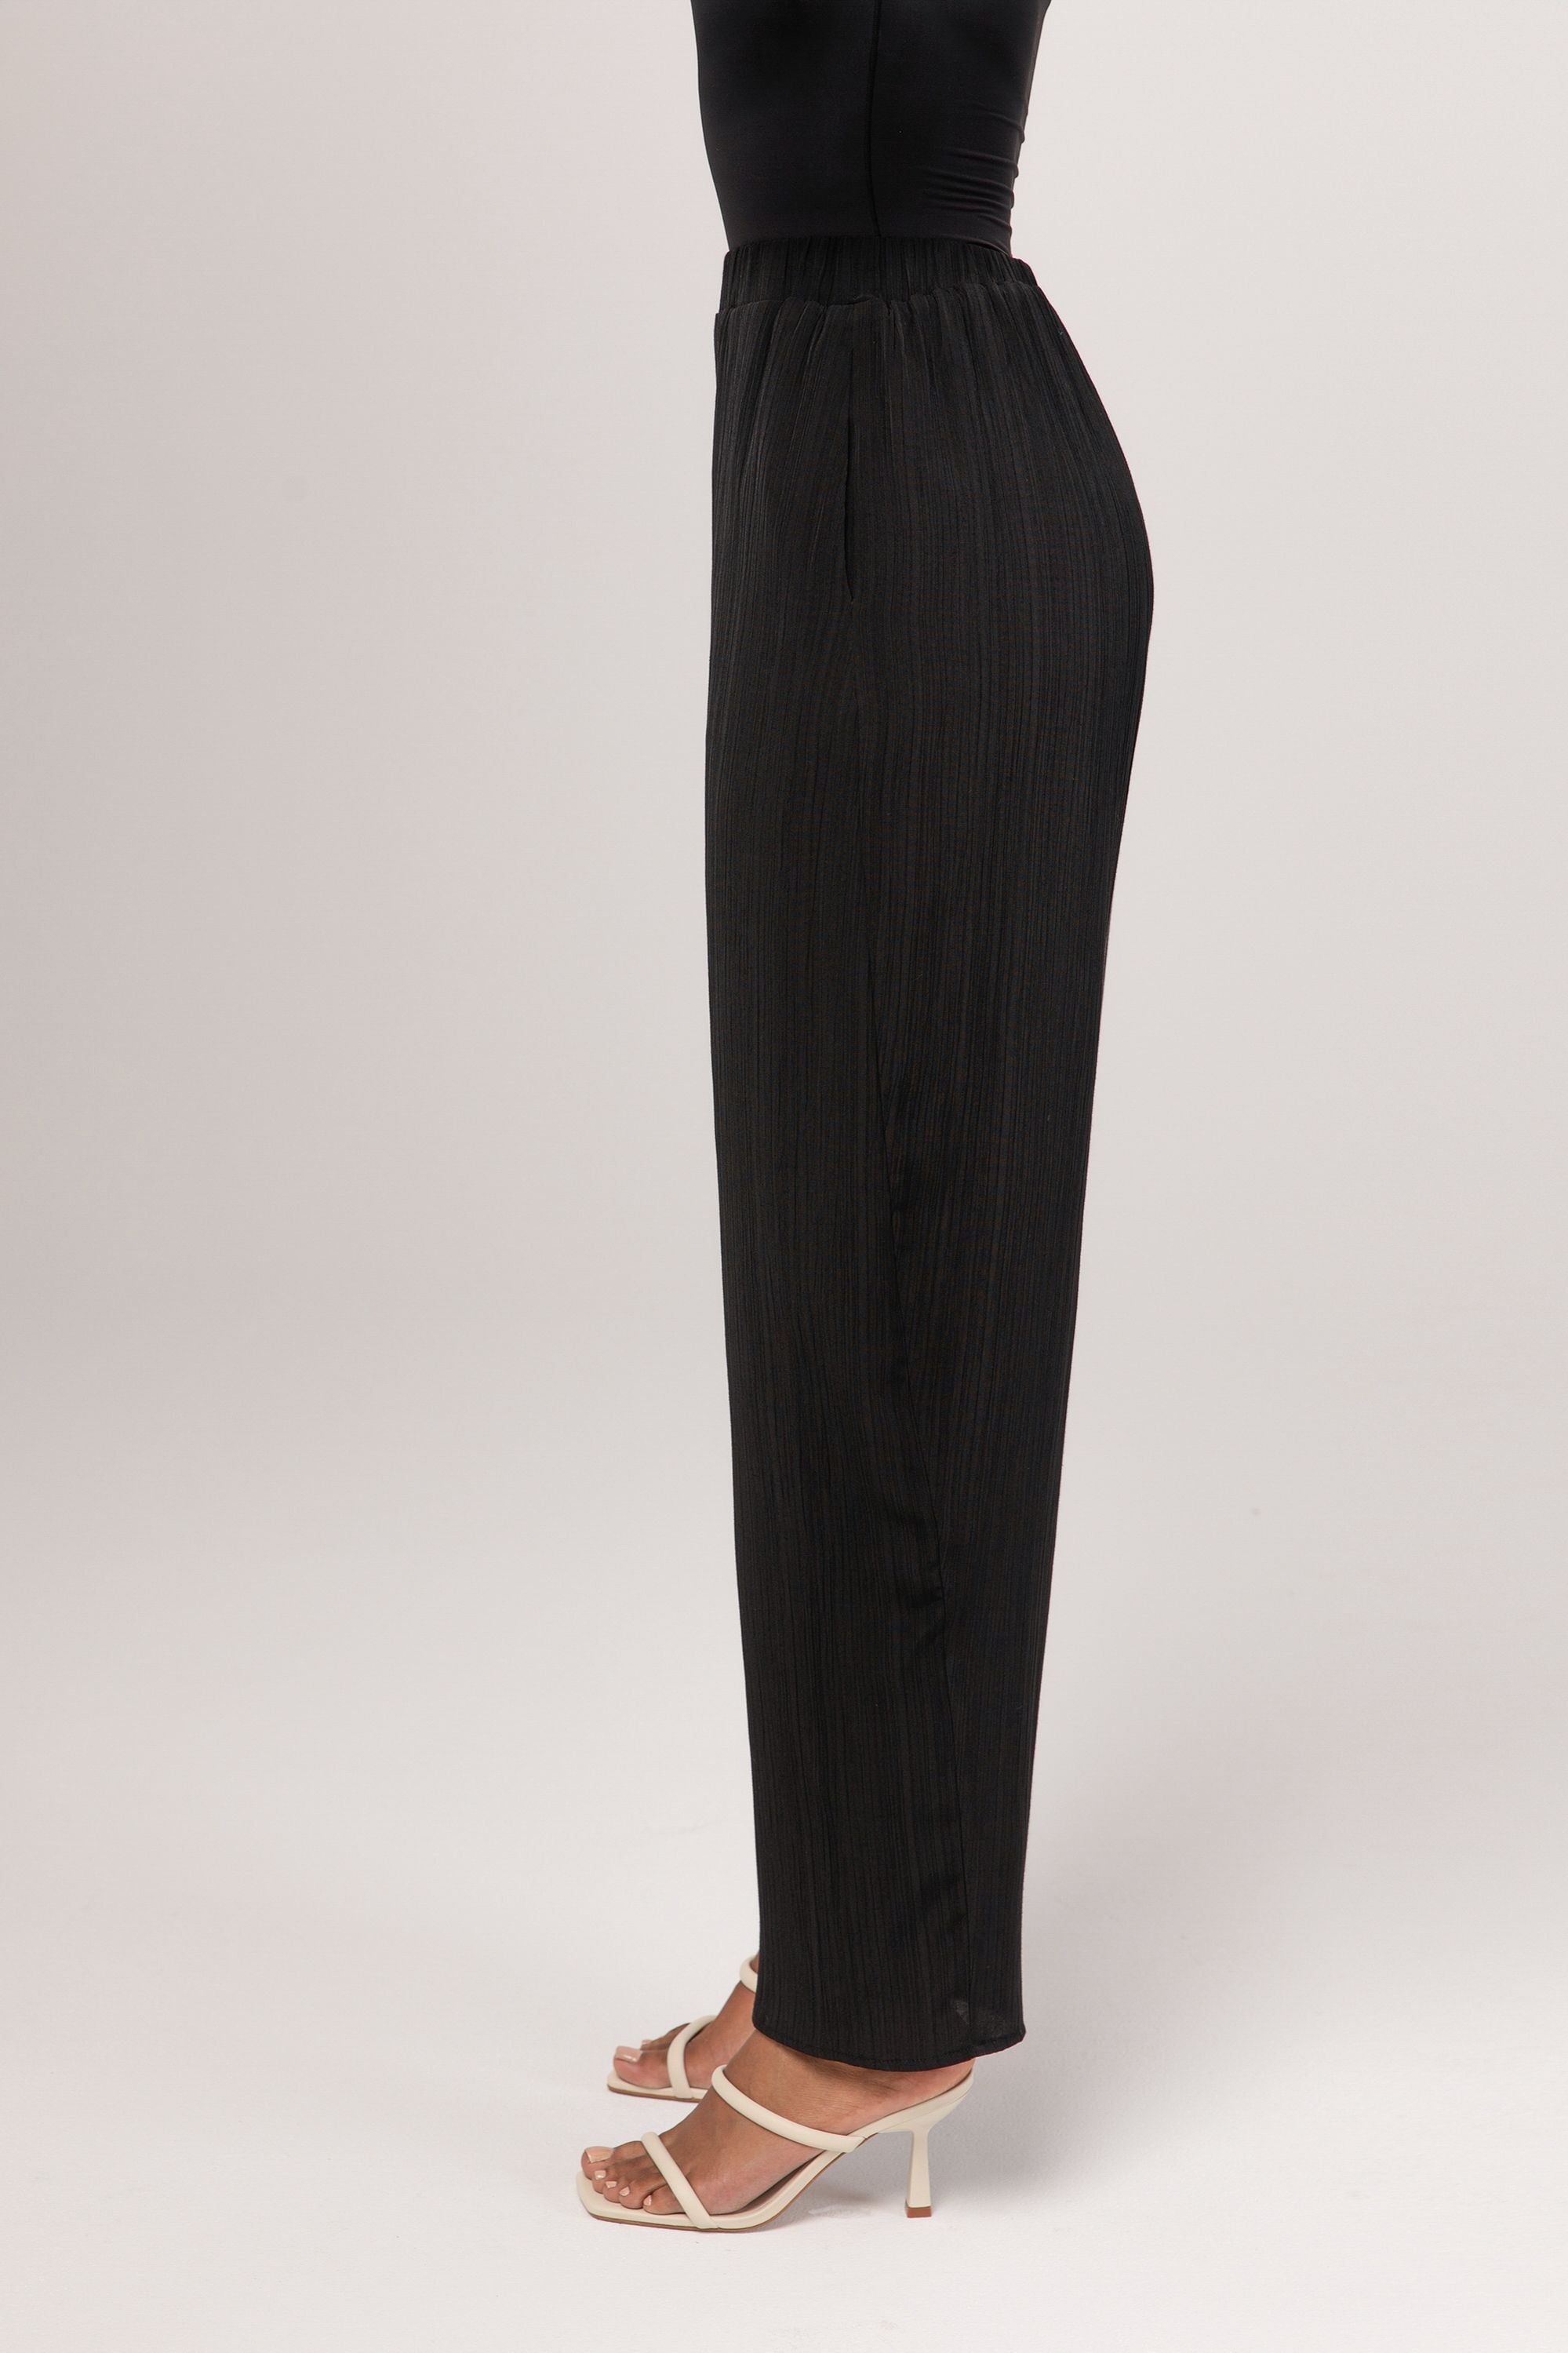 Nashwa Textured Rayon Wide Leg Pants - Black Veiled 